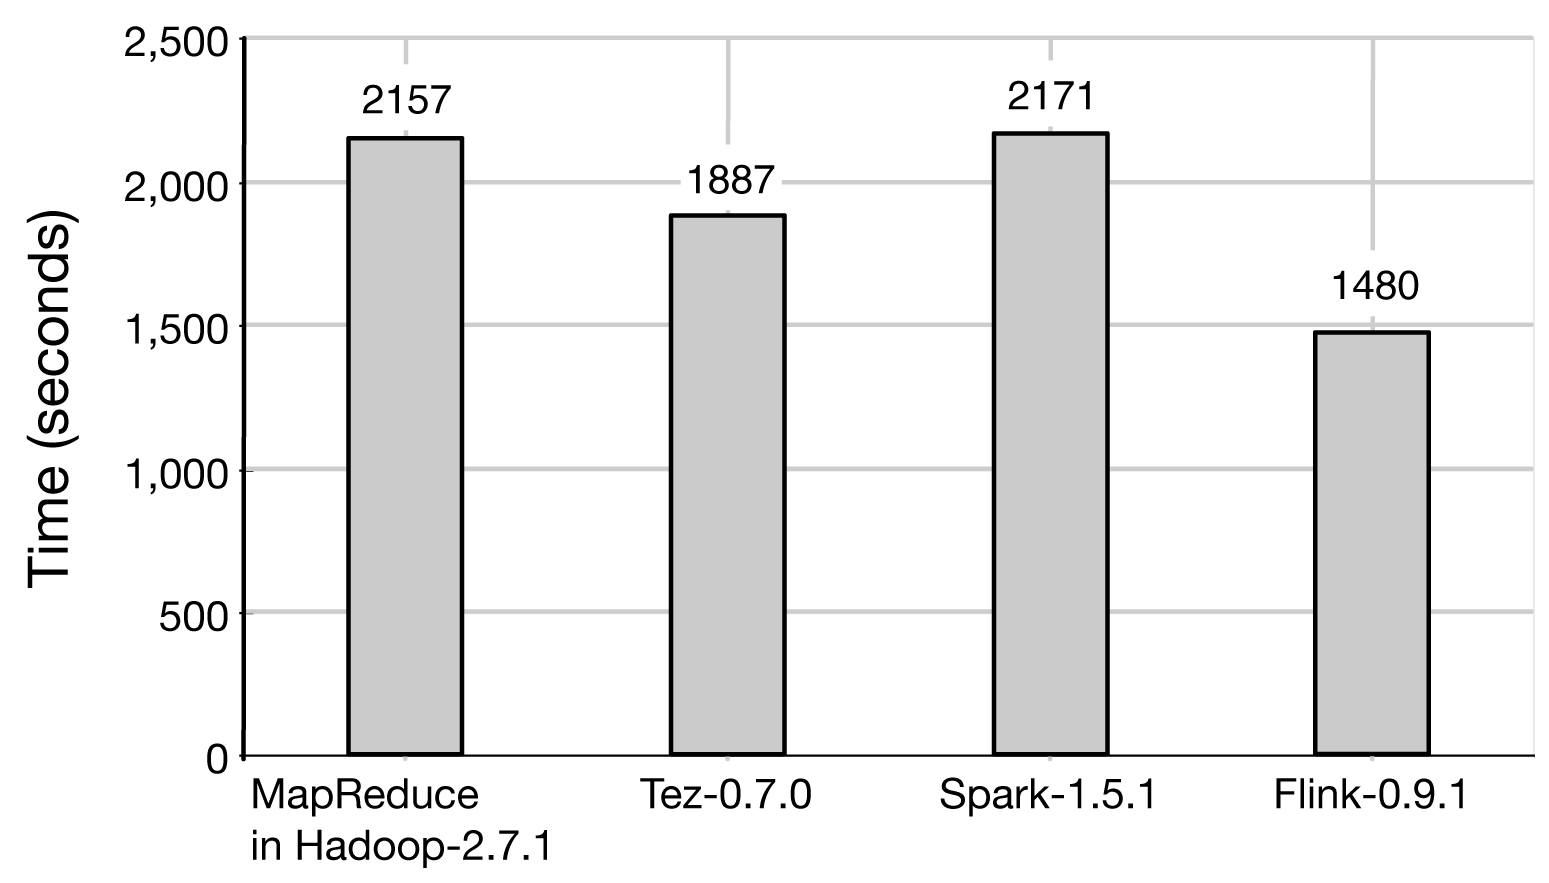 TeraSort results for MapReduce, Tez, Spark, and Flink.